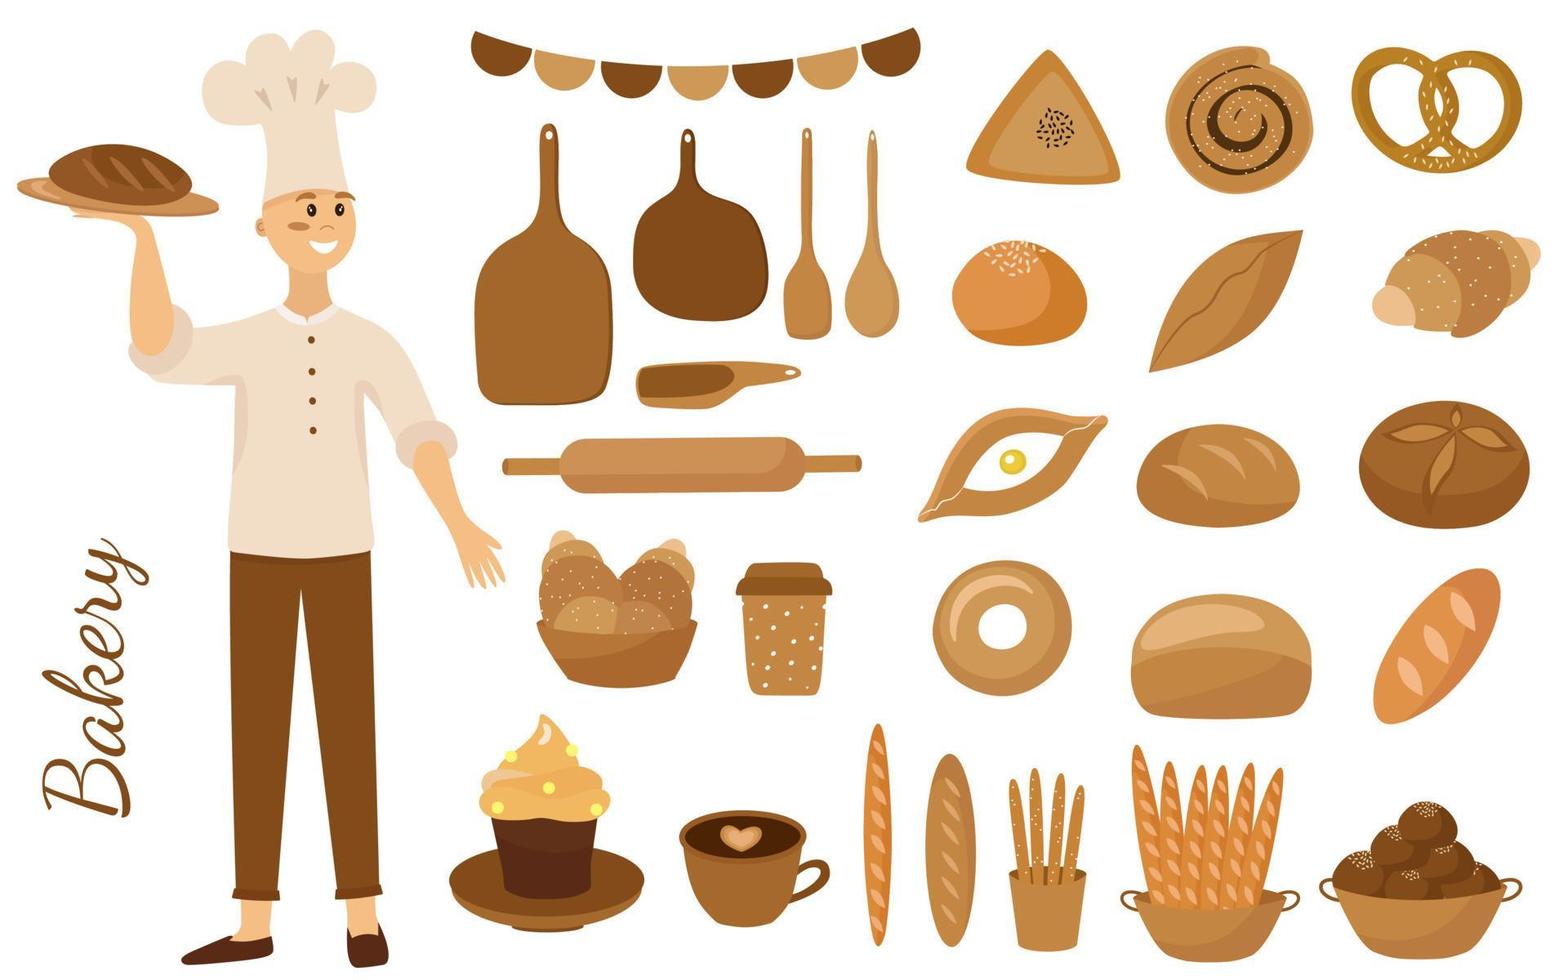 padaria, confeitaria, cozinheira. um conjunto de produtos de panificação, pão e confeitaria. pãezinhos, baguete, pão, croissant, bolo, khachapuri e utensílios de cozinha. a ilustração vetorial é isolada. vetor